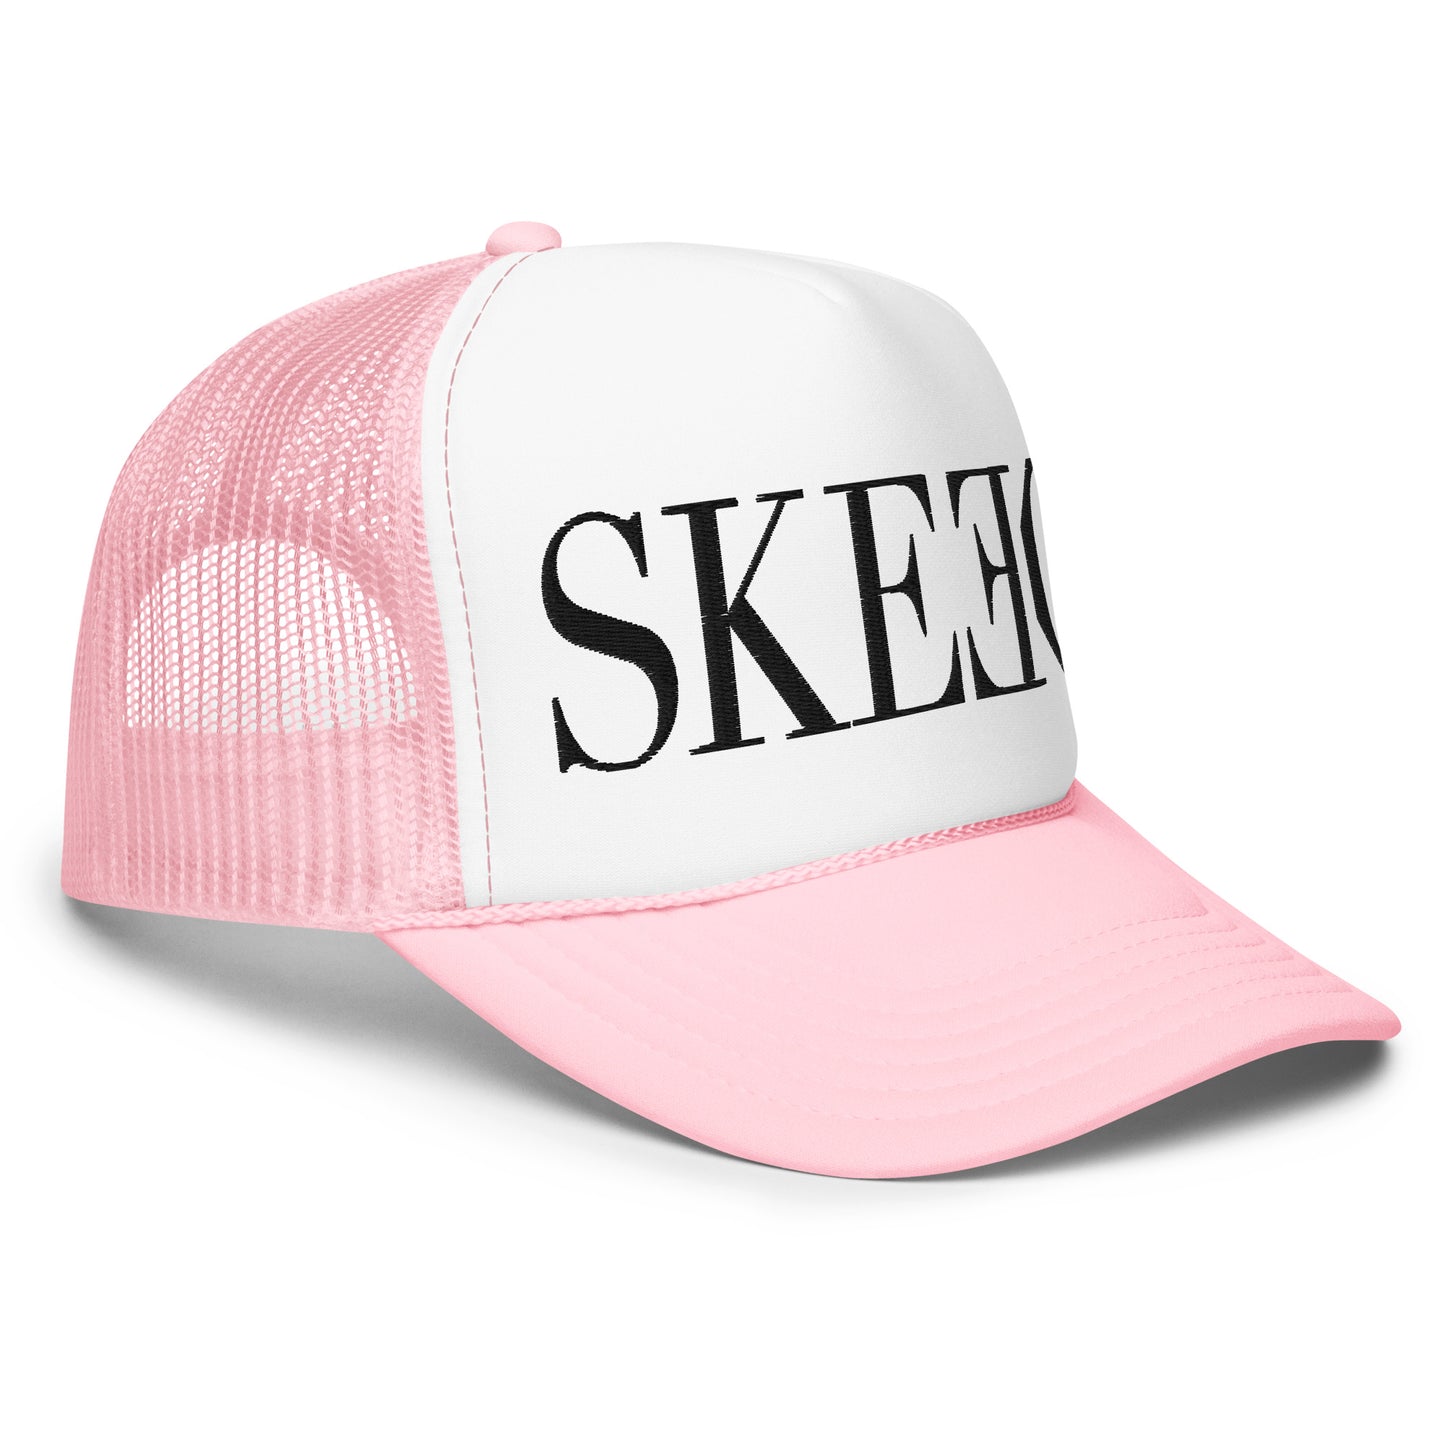 SK Foam trucker hat